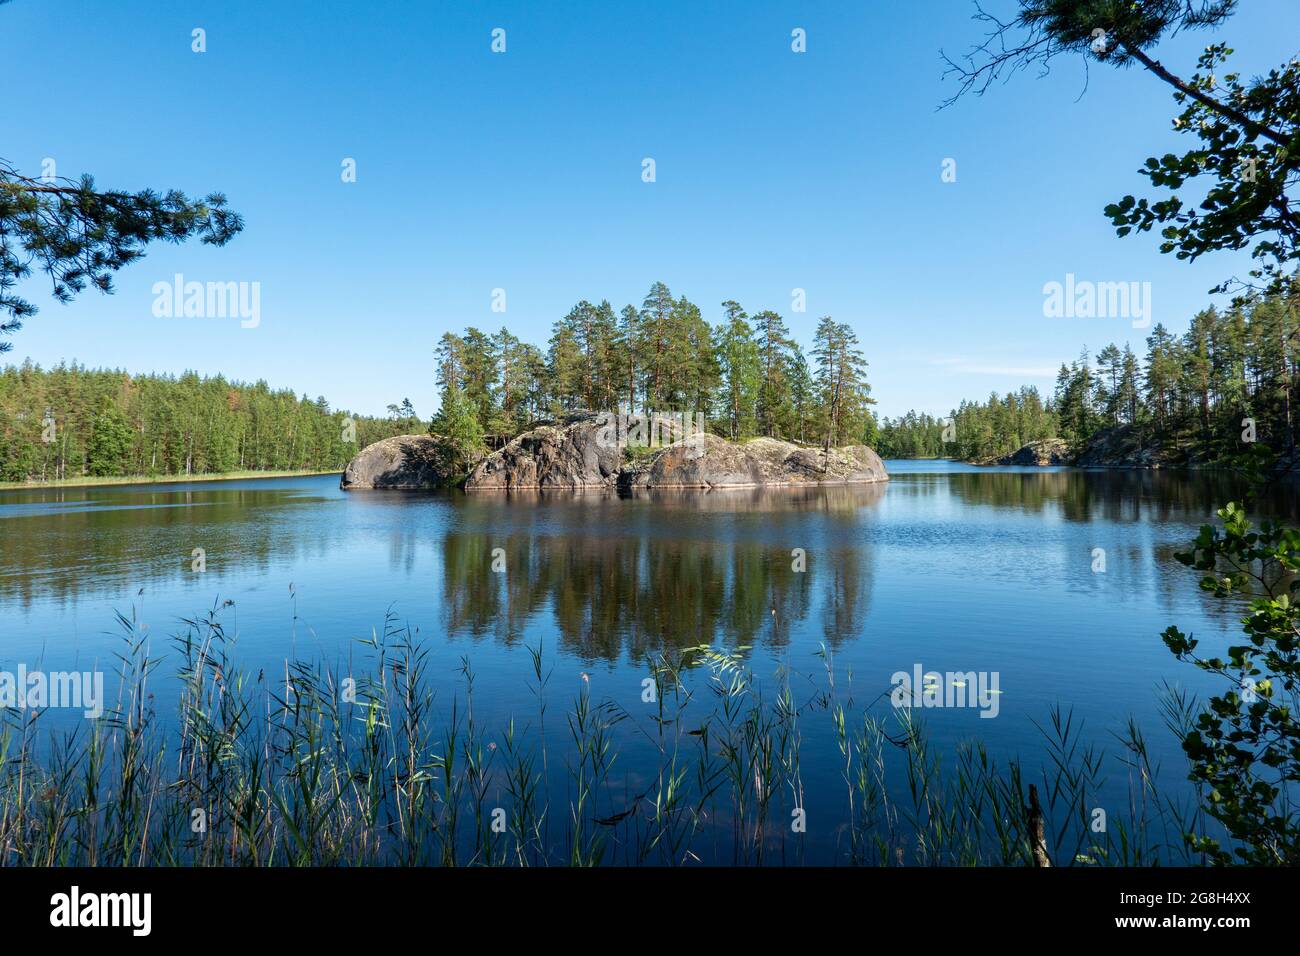 Niskalampi lake islet in Ristiina, Finland Stock Photo